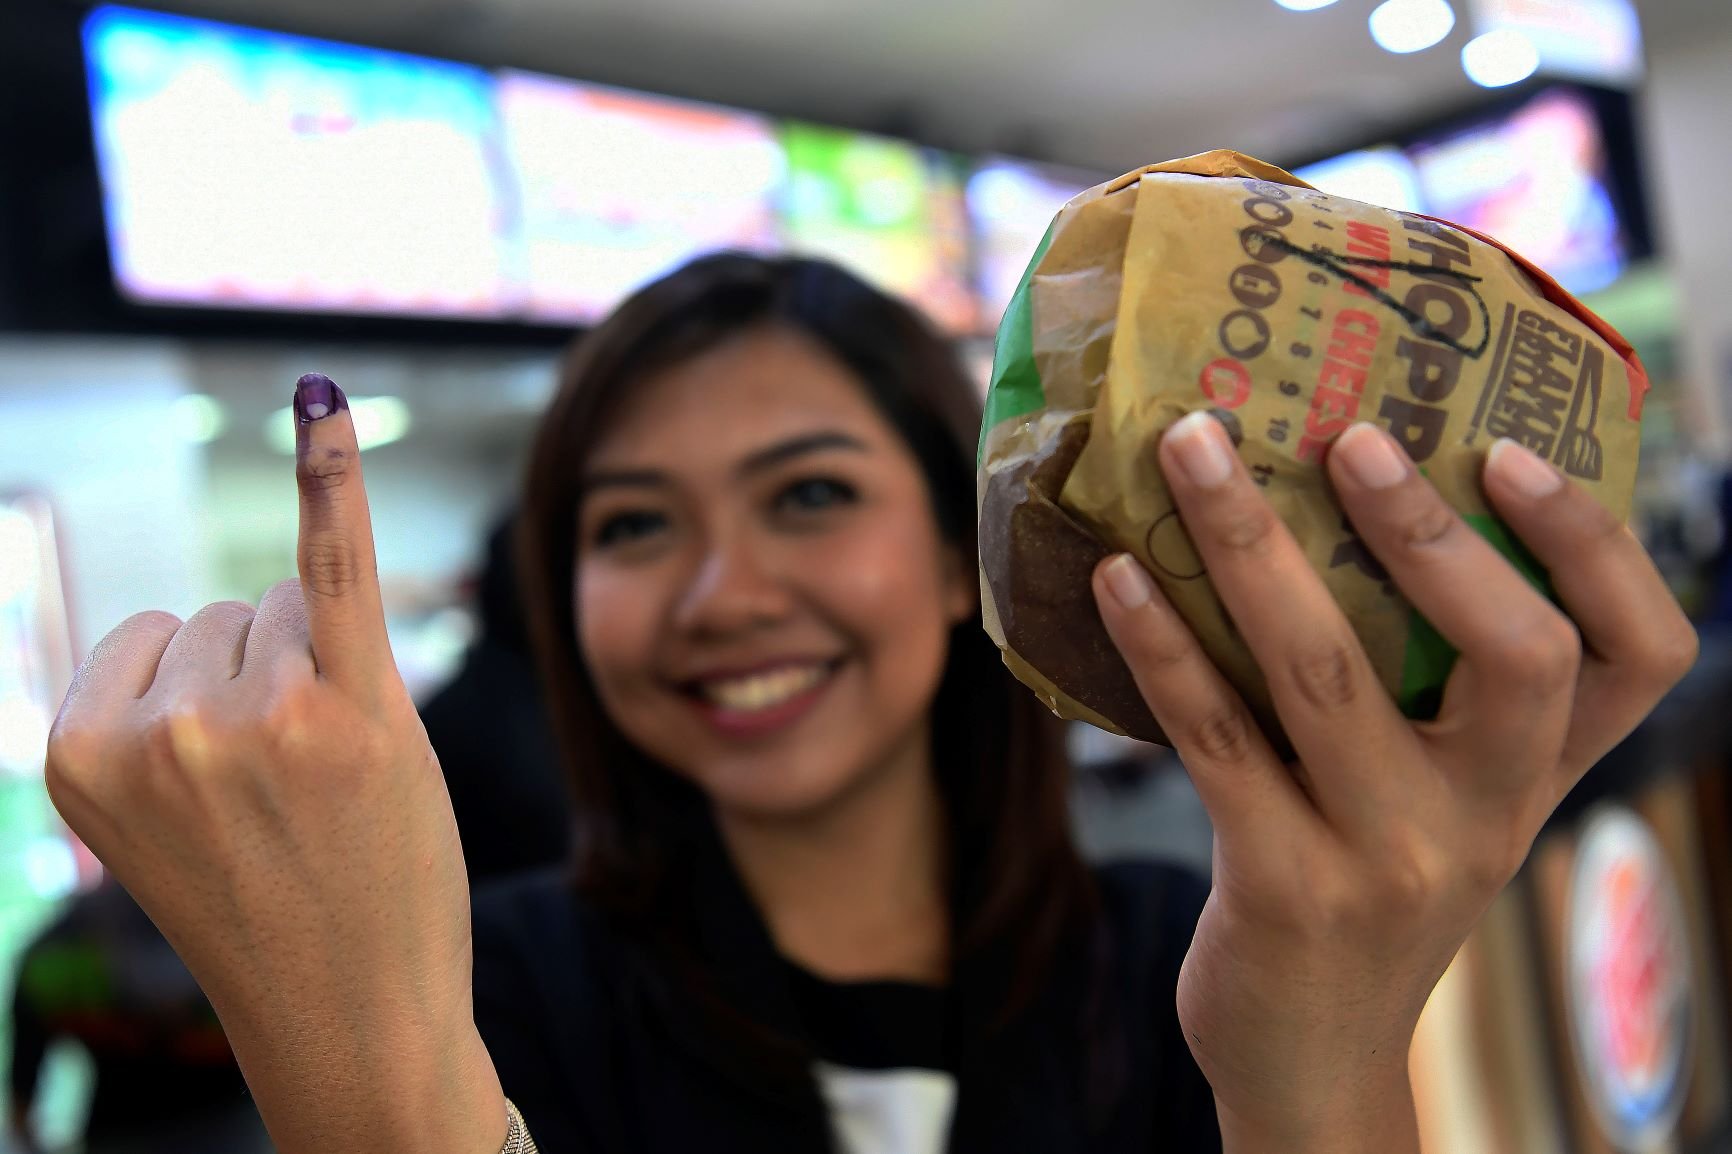 Warga menunjukkan jari yang telah dicelupkan tinta Pemilu saat membeli salah satu makanan siap saji di Jakarta, Rabu (17/4/2019). Sejumlah pusat perbelanjaan dan gerai makanan memberikan potongan harga atau diskon untuk masyarakat yang menggunakan hak pilihnya pada pesta demokrasi Pemilu serentak 2019. 